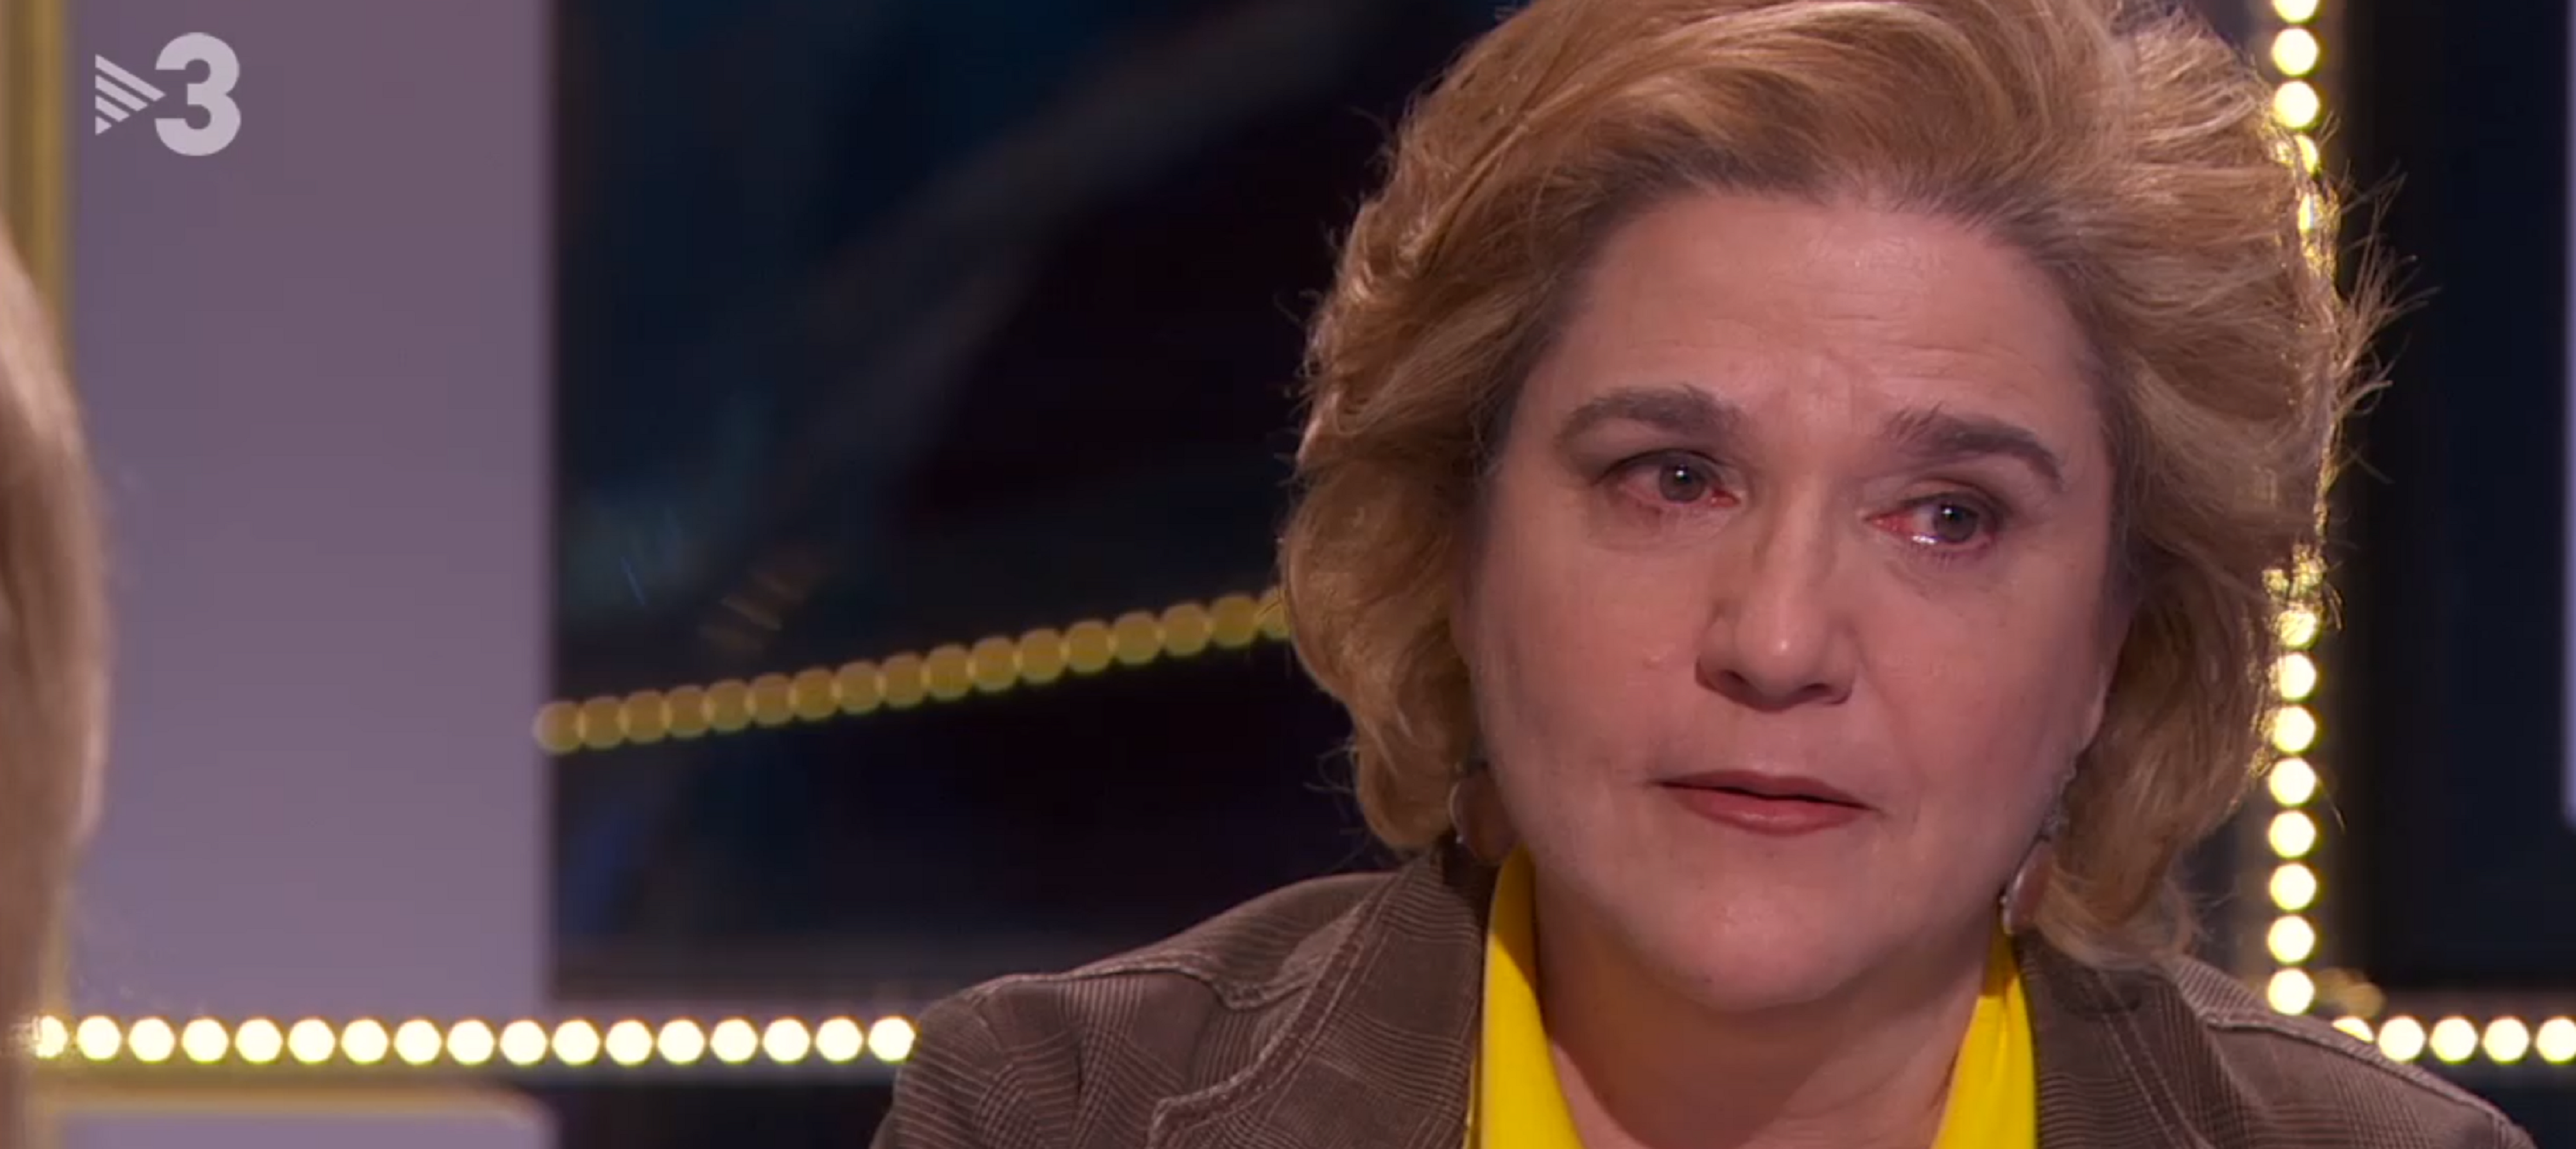 Rahola rompe a llorar con los presos en el Congreso: "Estamos sufriendo mucho"